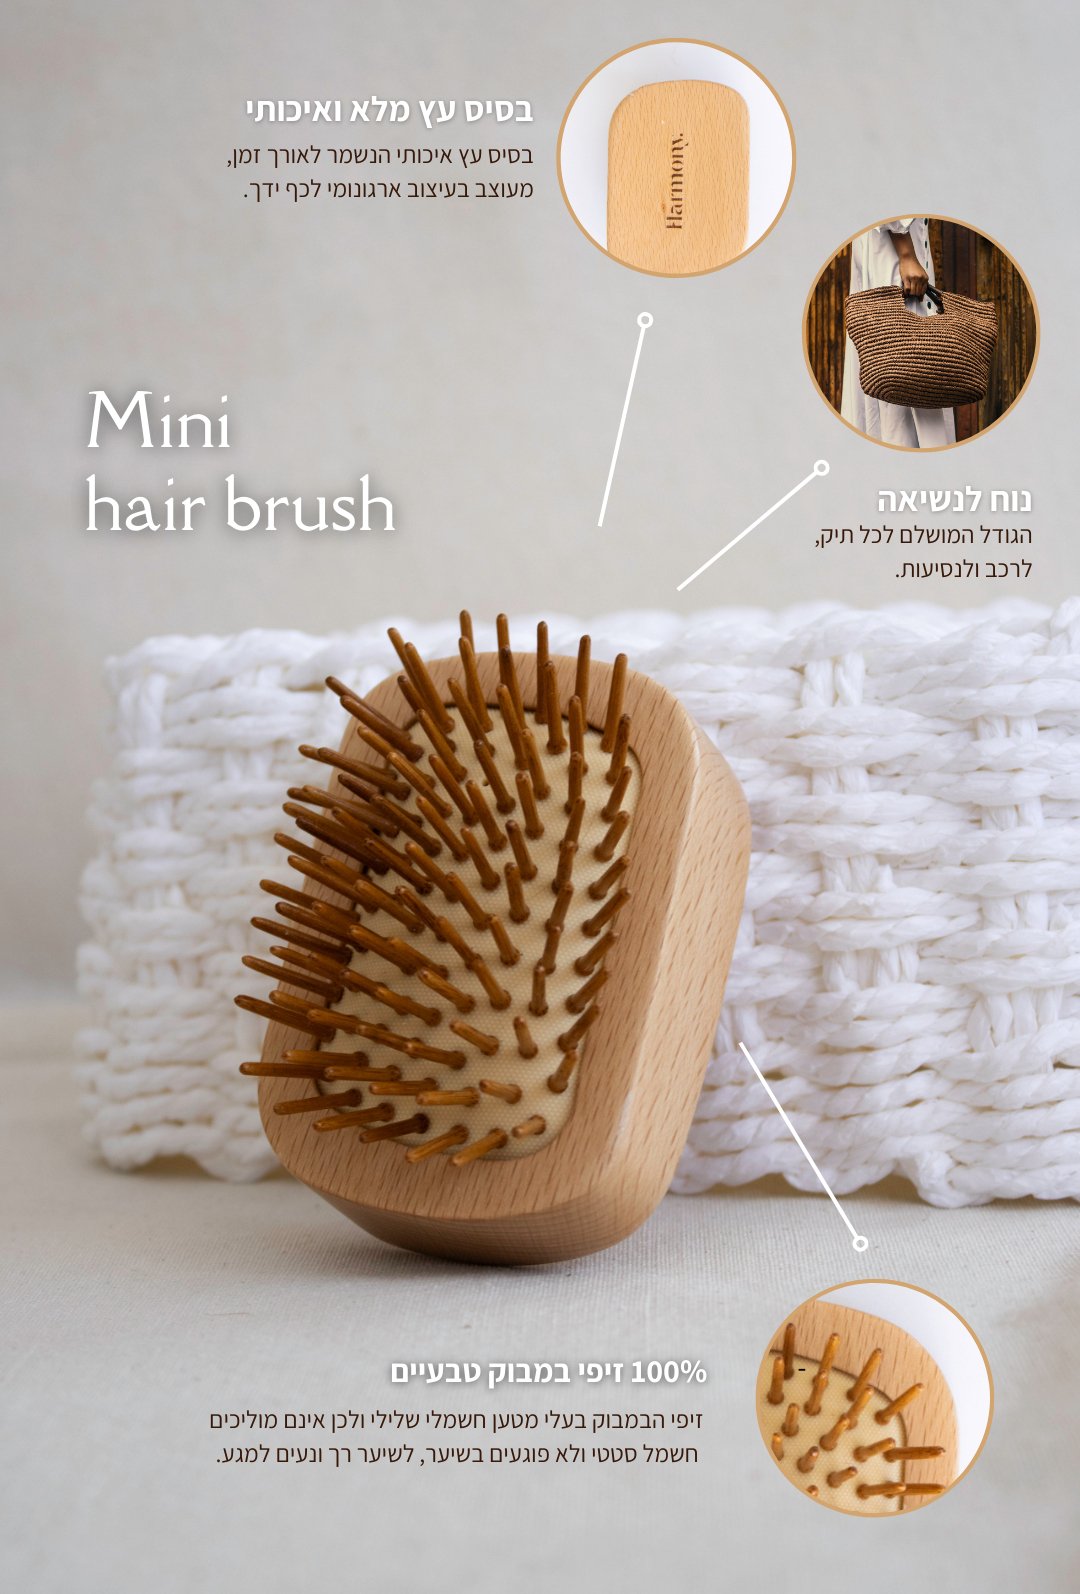 Mini hair brush